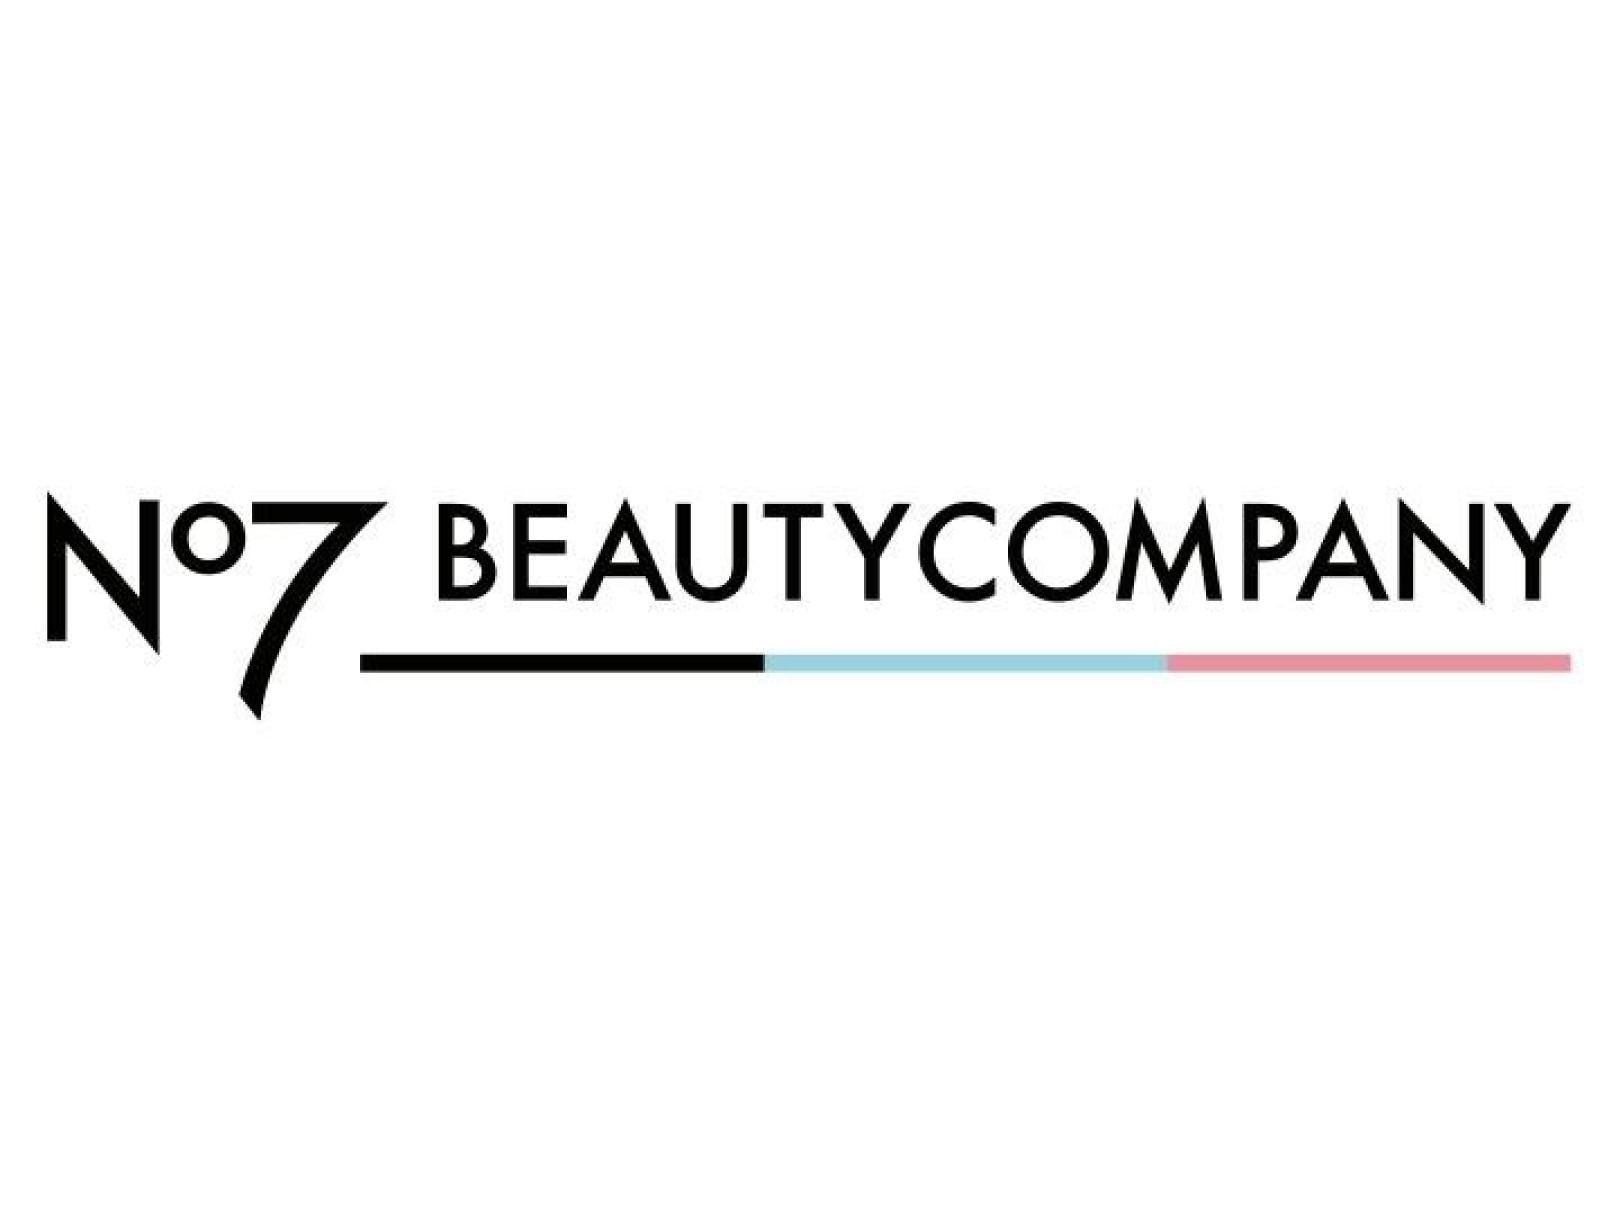 No7 Beauty Company logo